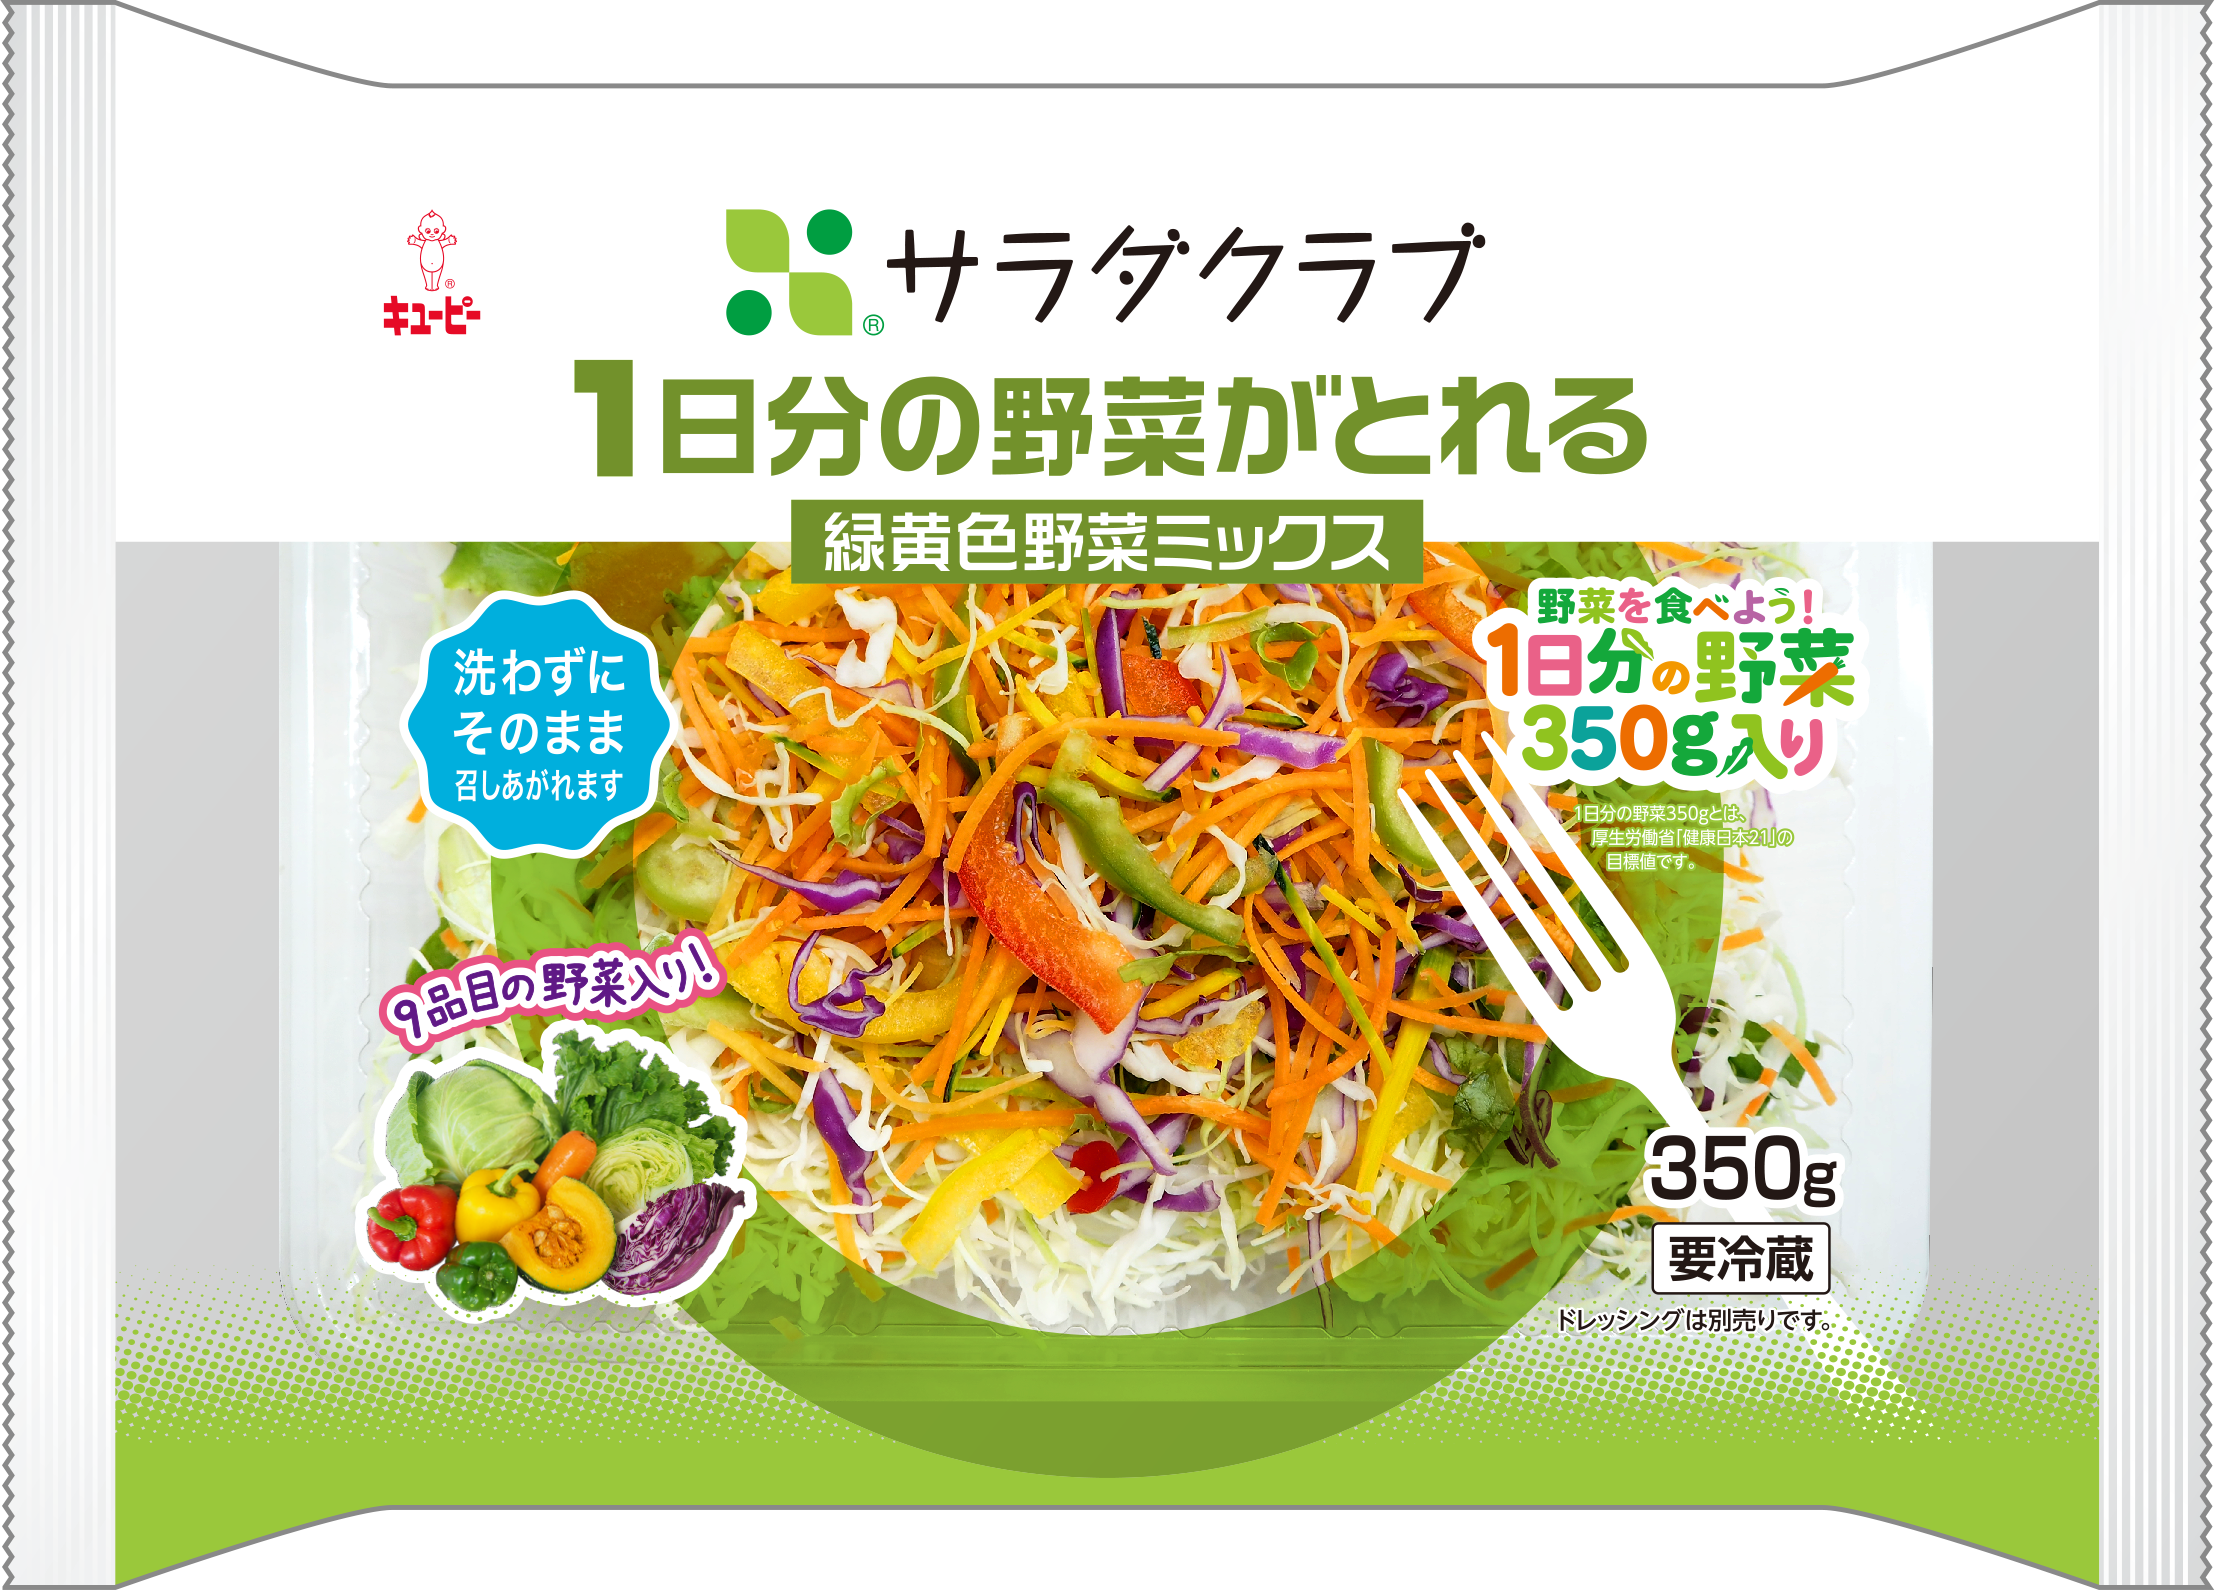 国が推奨する一日の野菜摂取量 350g が摂れる 1日分の野菜がとれる 緑黄色野菜ミックス 株式会社サラダクラブのプレスリリース